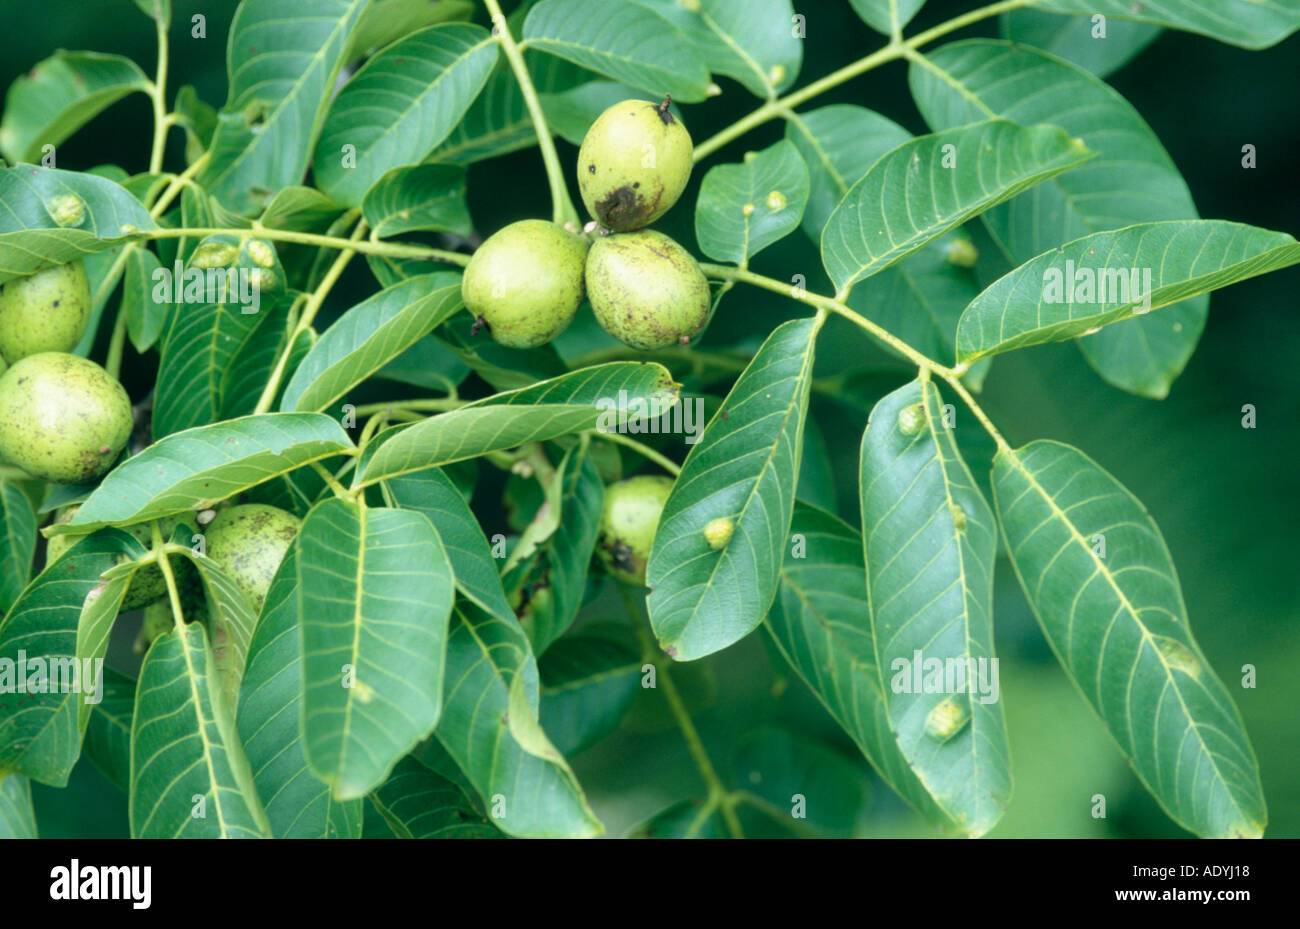 walnut (Juglans regia), twig with fruits. Stock Photo